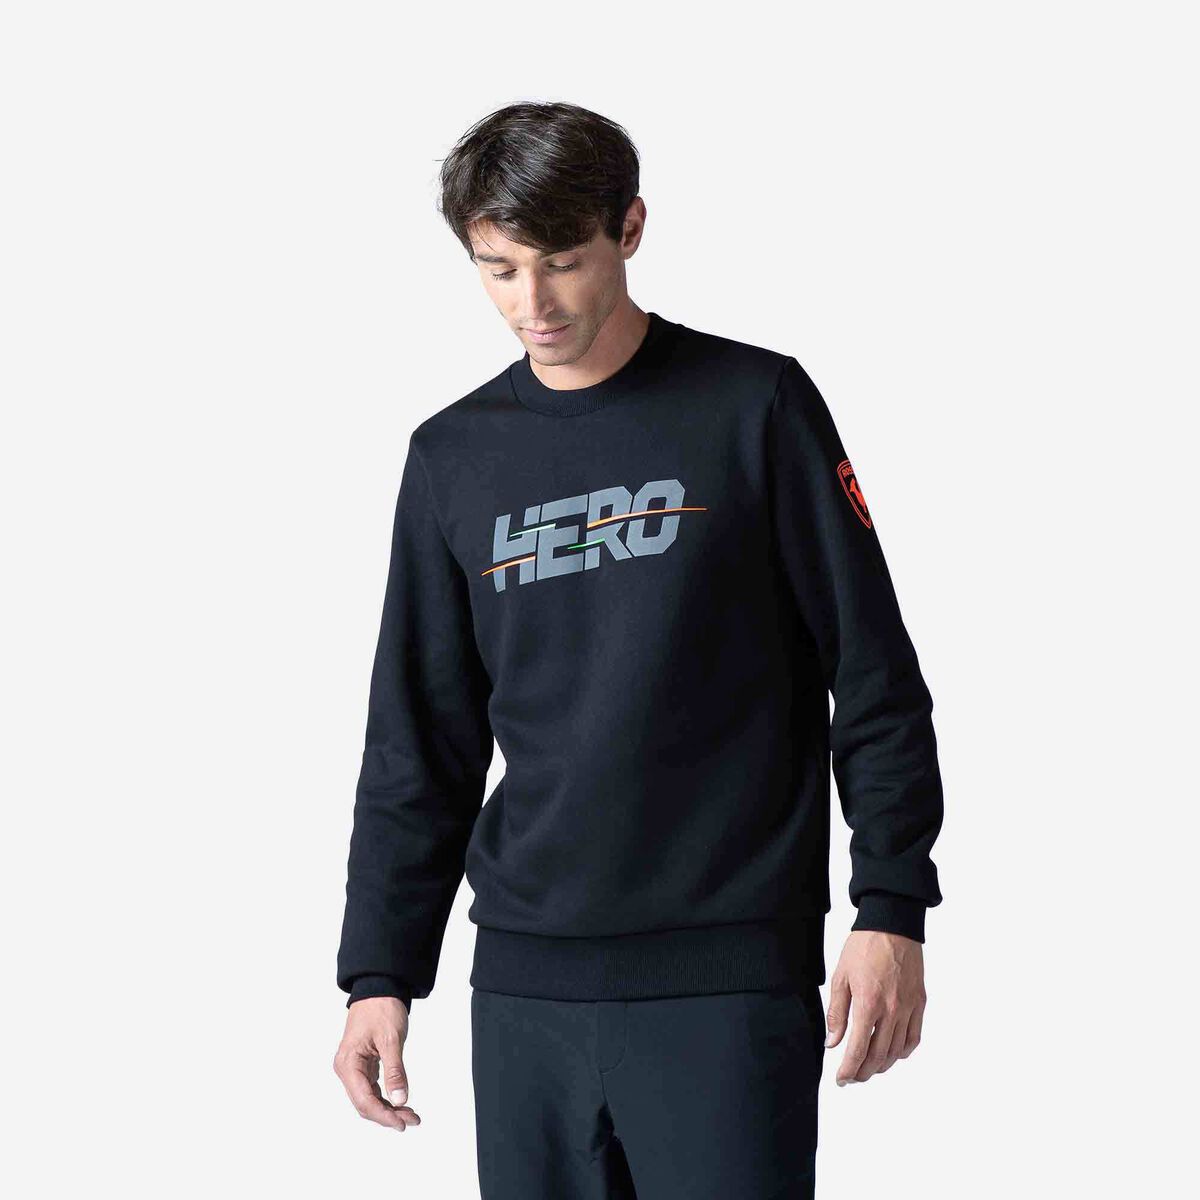 Hero Herrensweatshirt